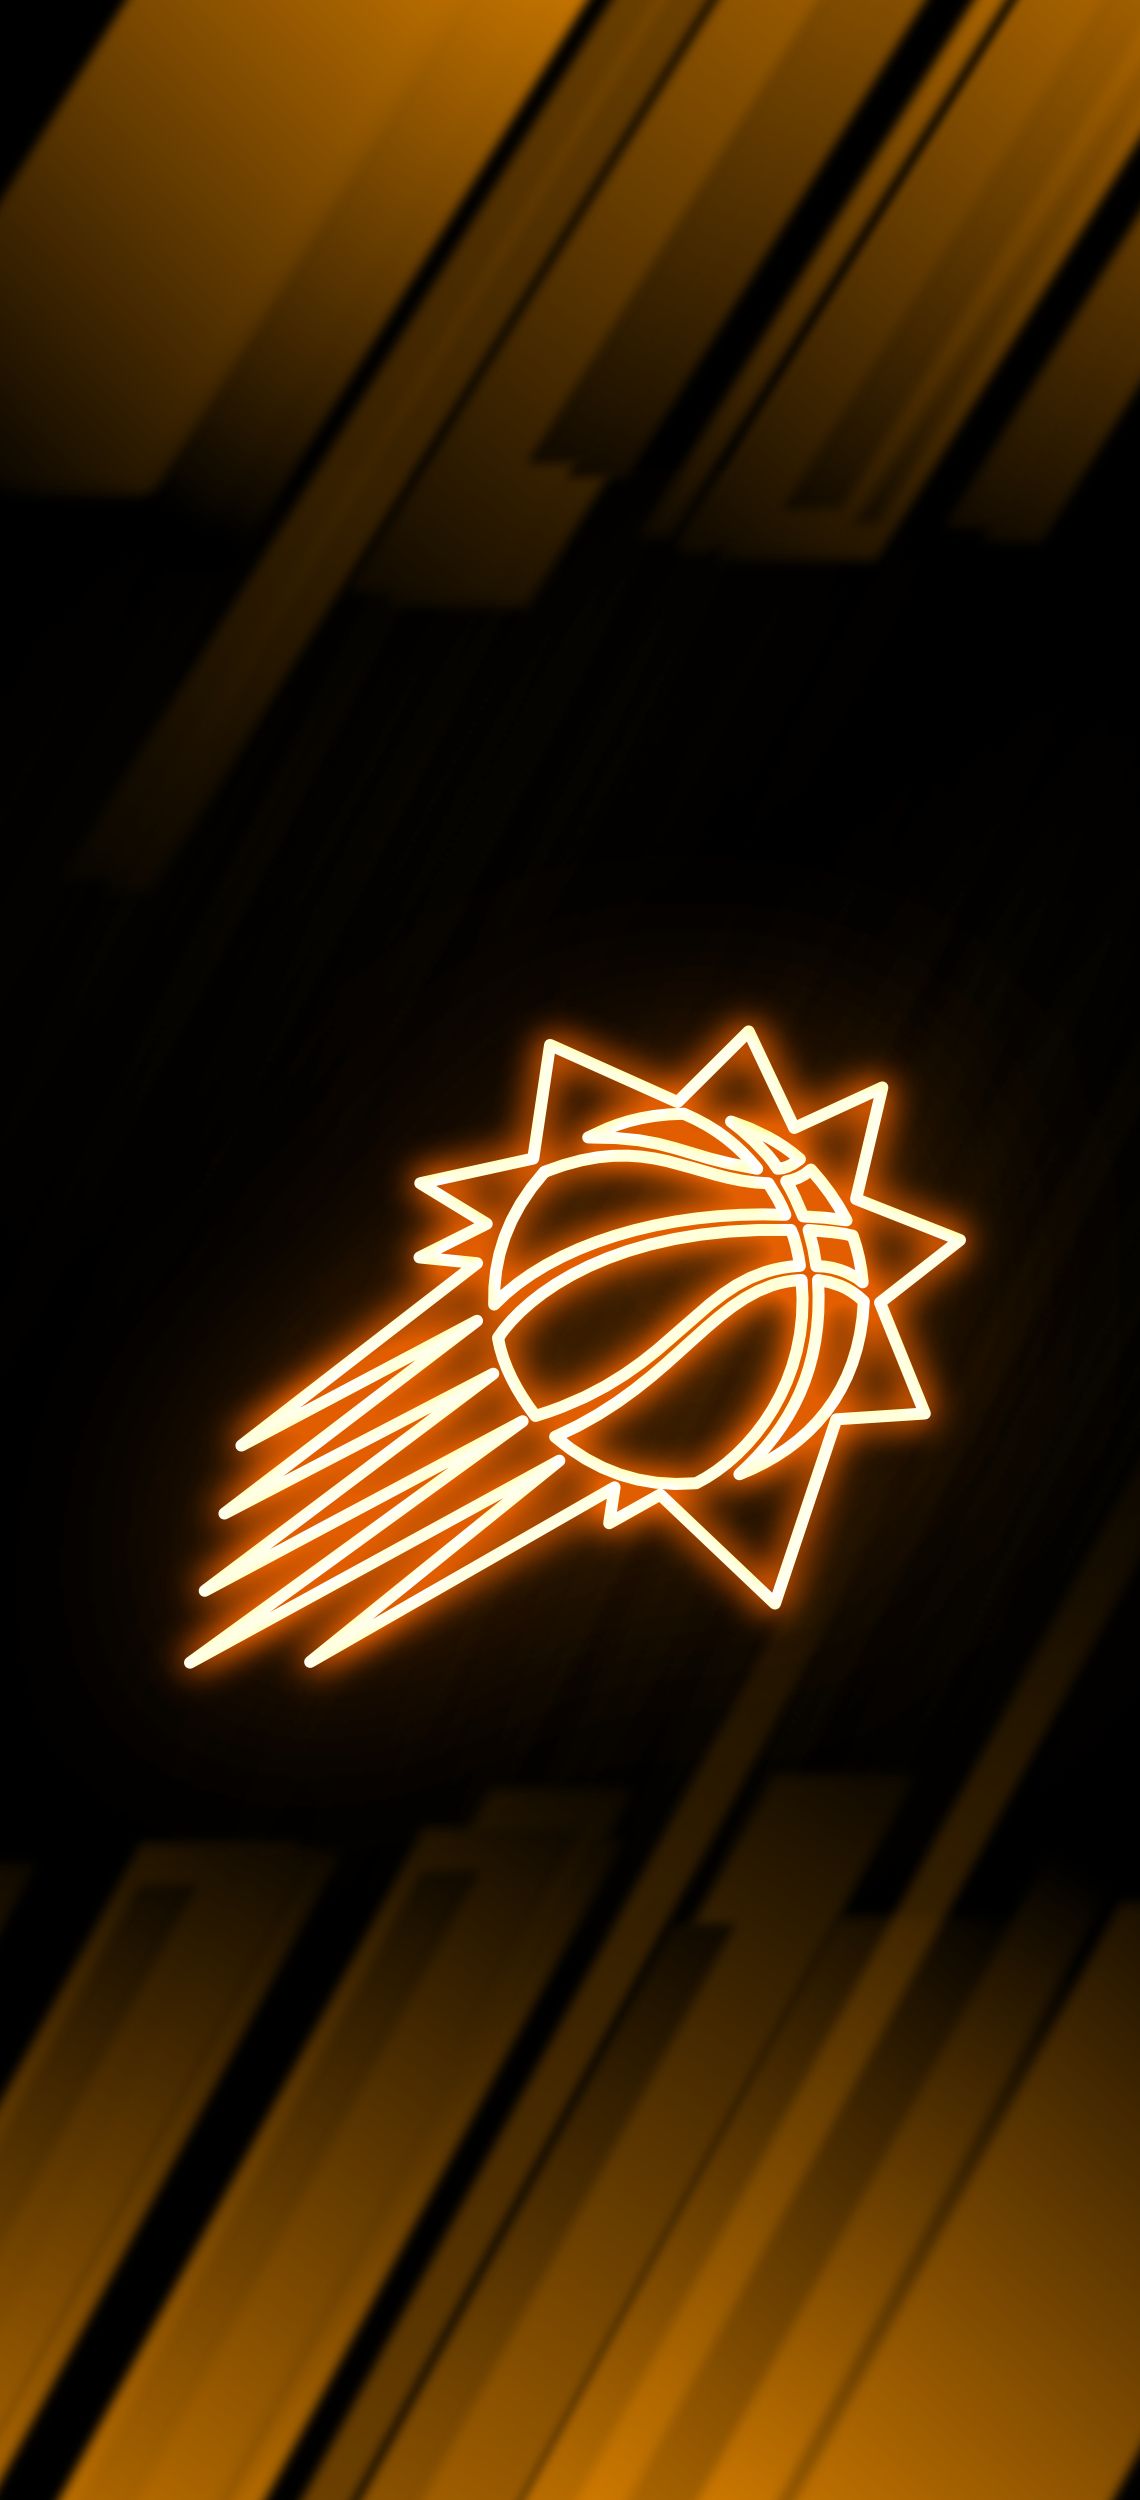 Phoenix Suns Neon Wallpaper. Phoenix suns, Basketball wallpaper, Nba wallpaper